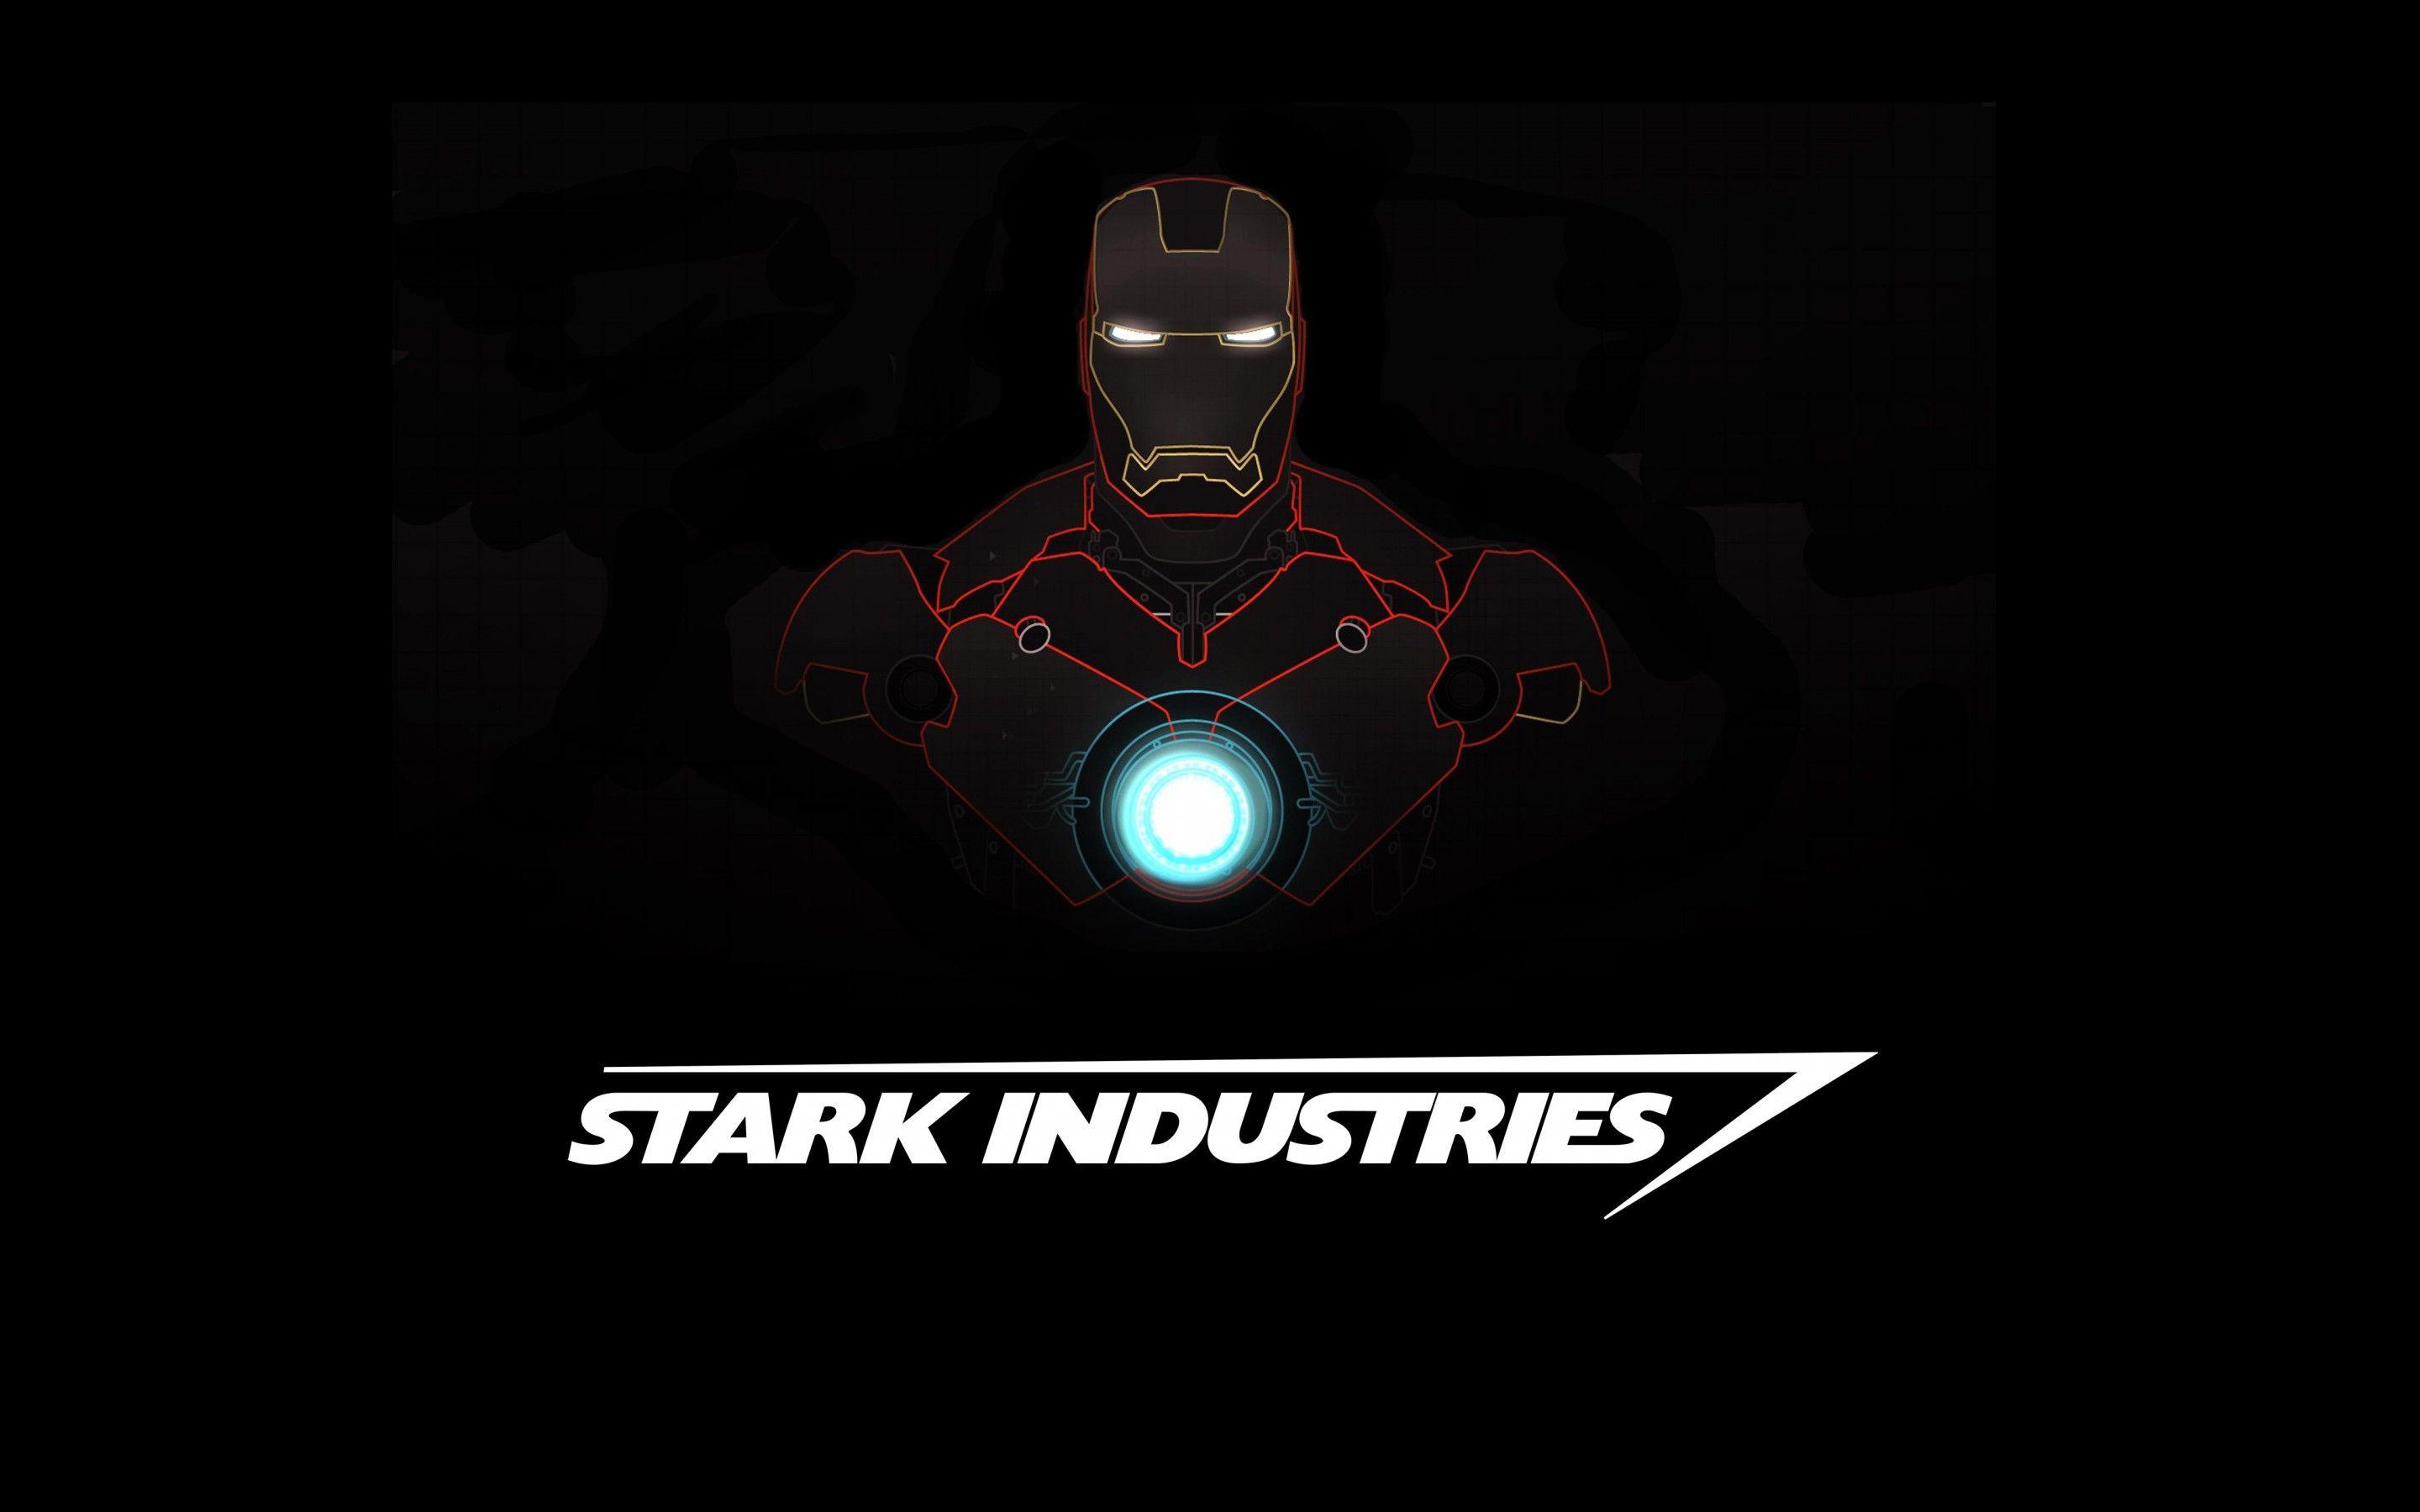 Iron Man Wallpaper 4K Free download